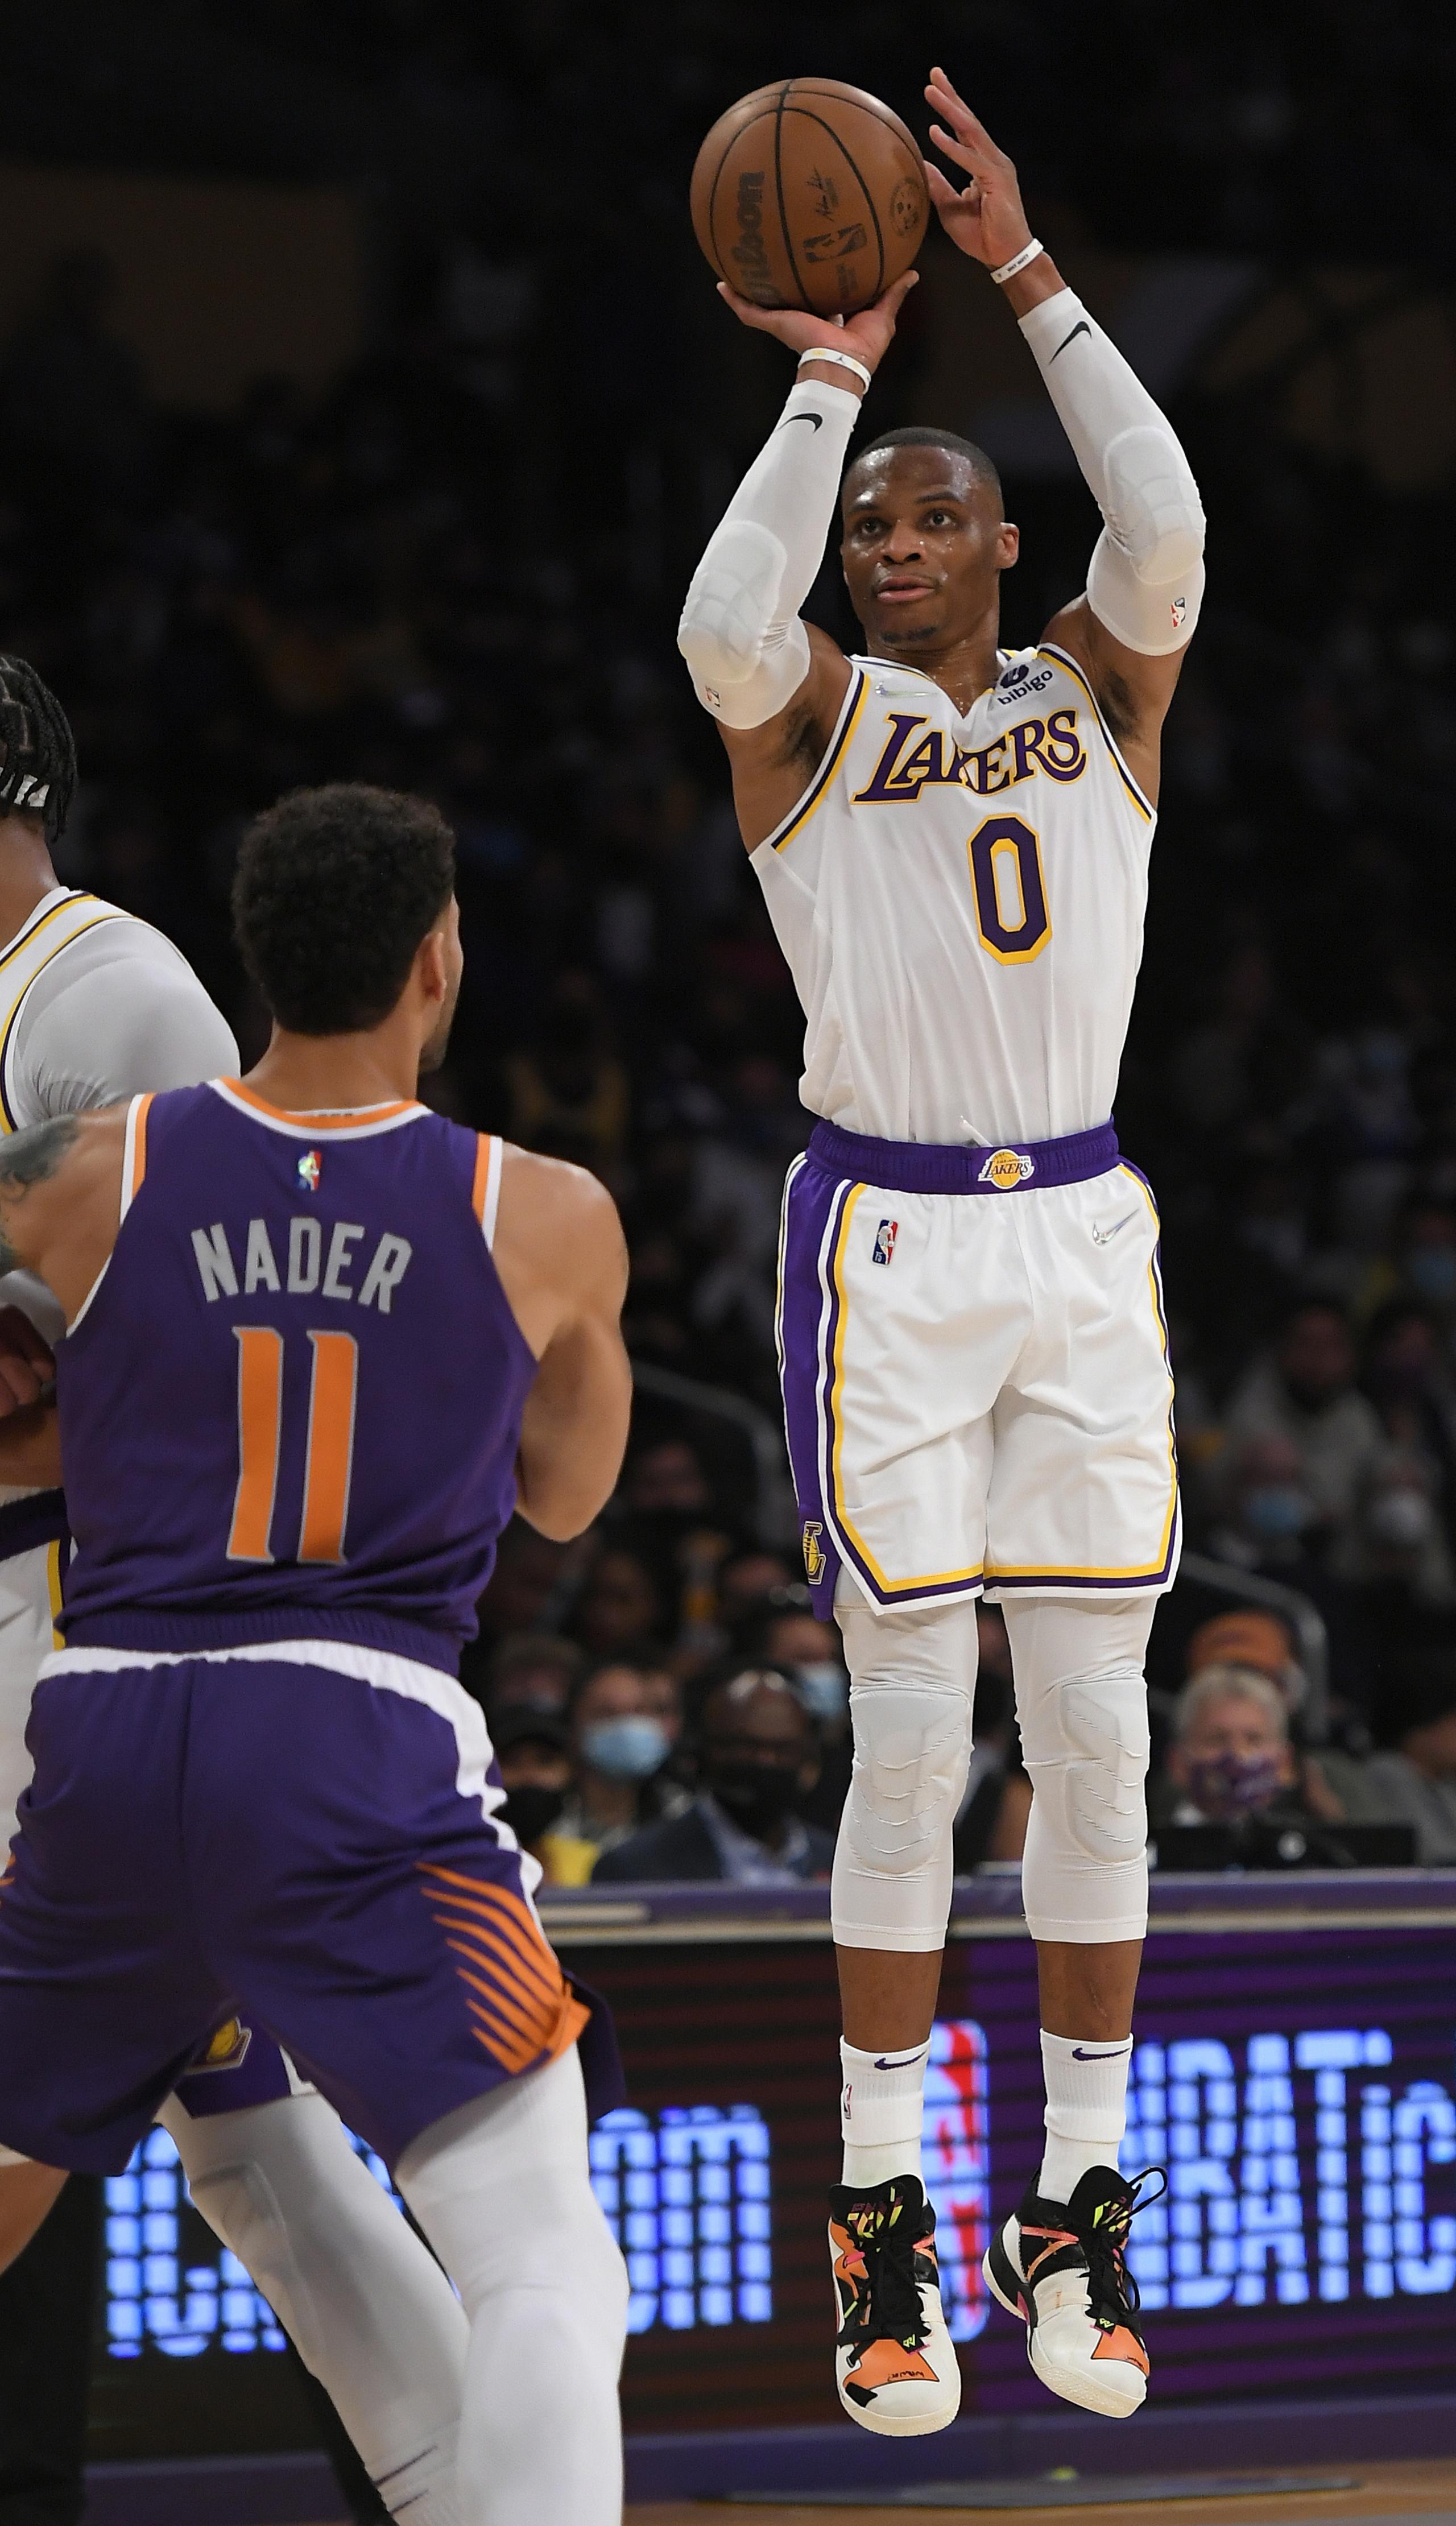 El alero de los Suns de Phoenix Abdel Nader observa mientras el base de los Lakers de Los Ángeles Russell Westbrook lanza el balón en el encuentro de pretemporada. Los Lakers están listos para buscar un campeonato con un renovado roster lleno de jugadores experimentados.